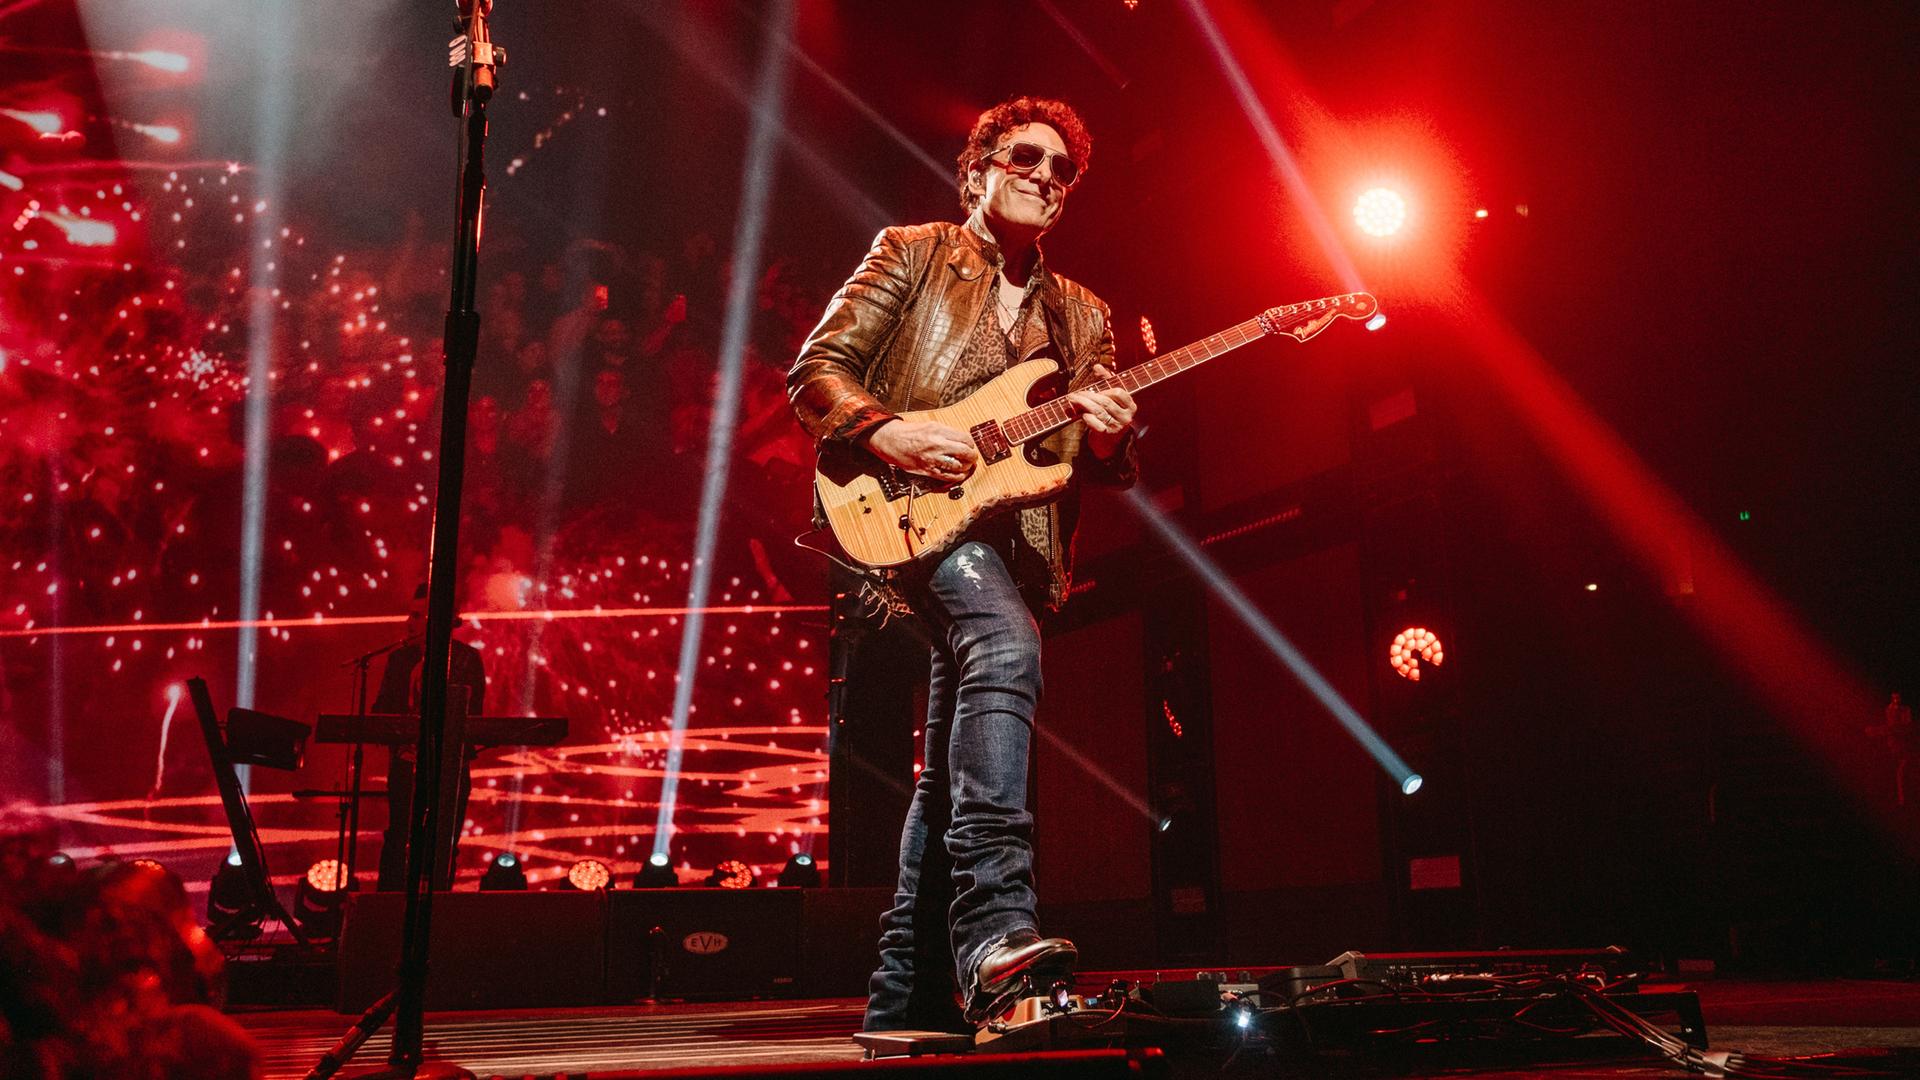 Journey-Konzert in Nashville. Der Gitarrist Neal Schon steht im roten Bühnenlicht. April 2022.